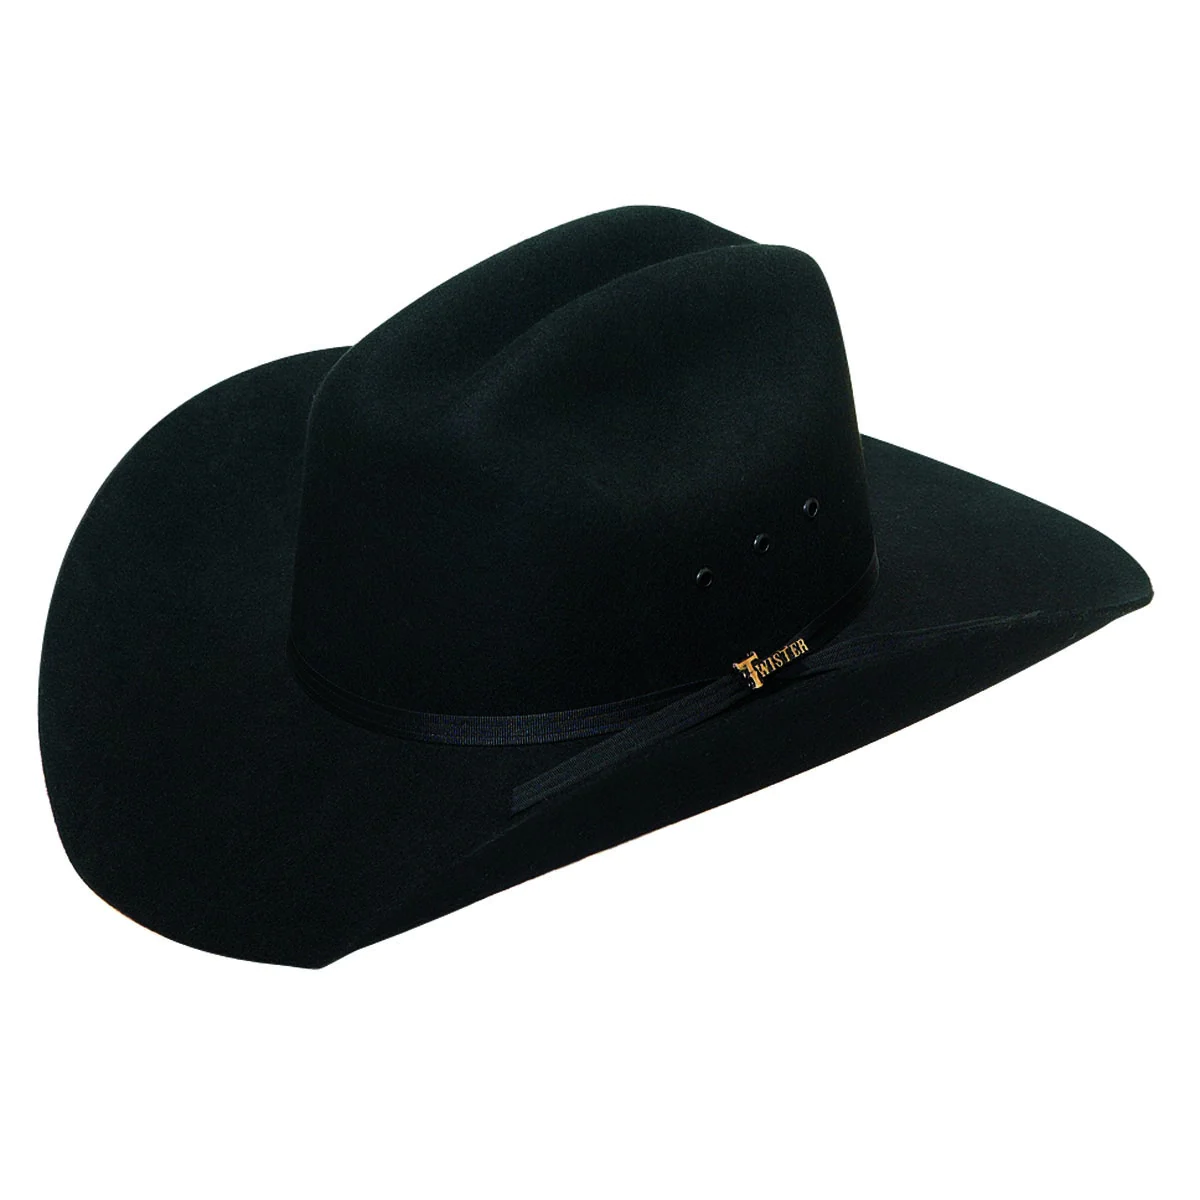 Twister Youth Black Felt Cowboy Hat